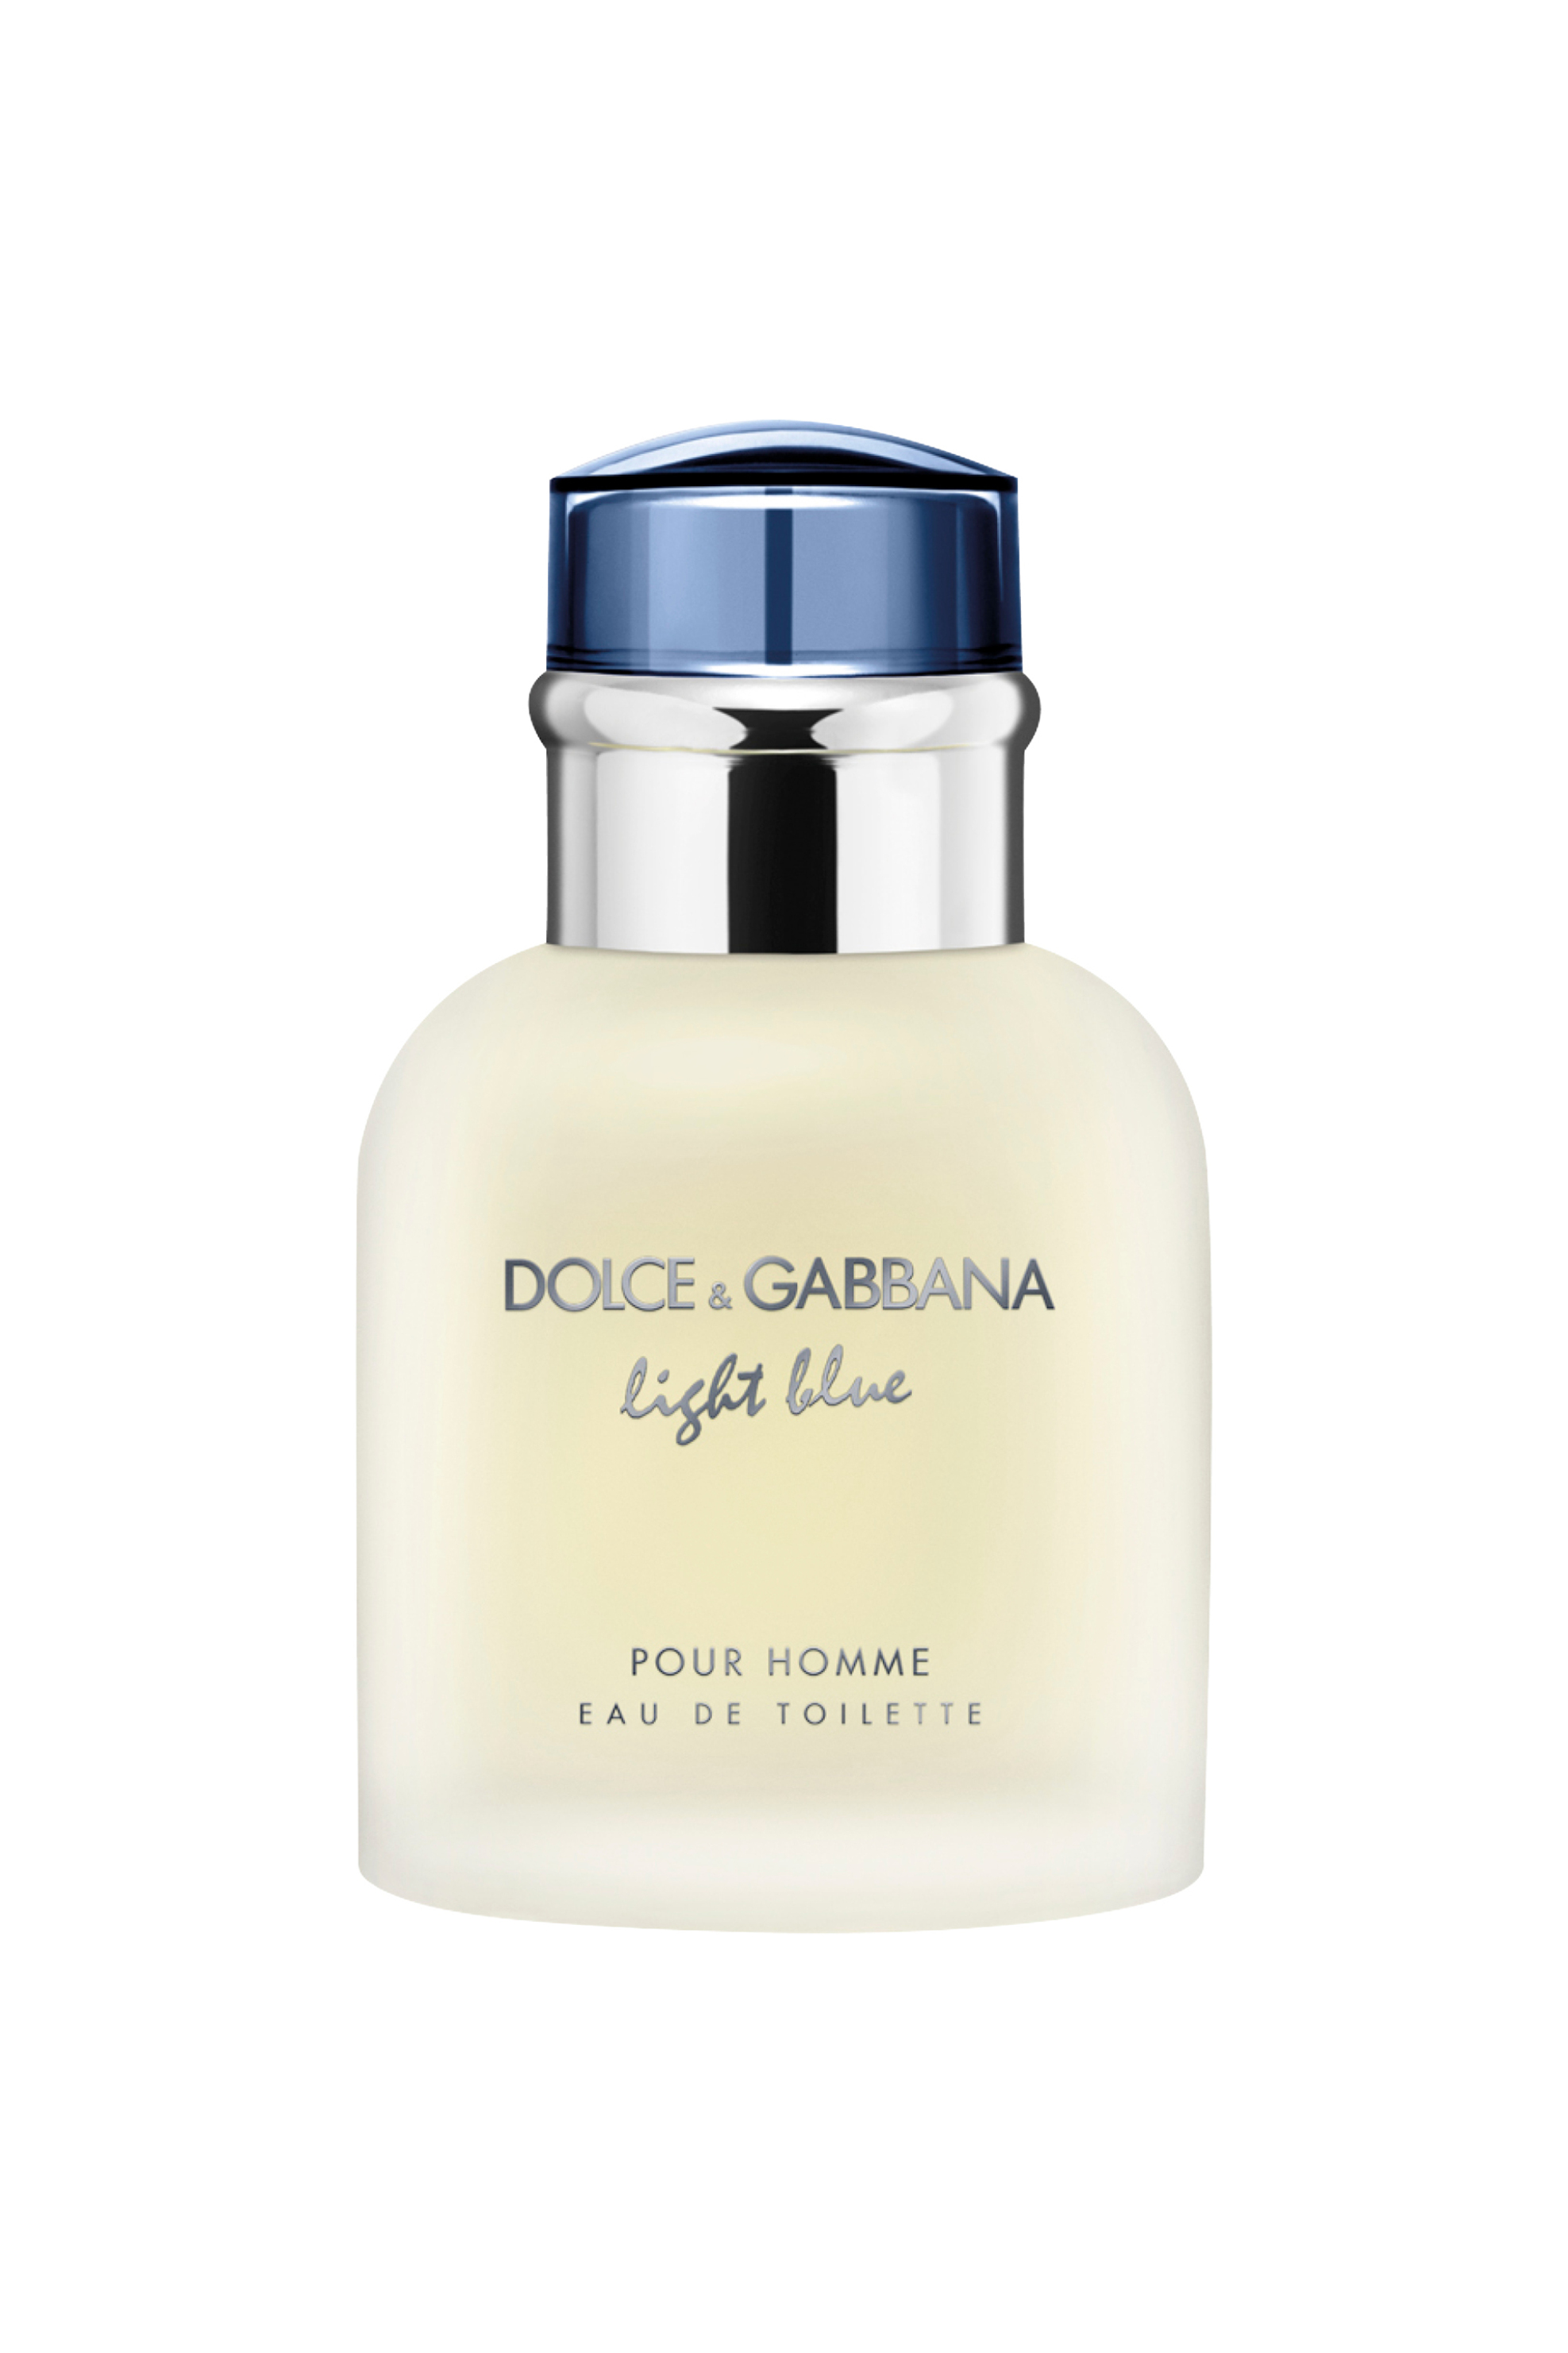 Ομορφιά > ΑΡΩΜΑΤΑ > Ανδρικά Αρώματα > Eau de Toilette Dolce & Gabbana Light Blue Pour Homme Eau de Toilette - 30205250000